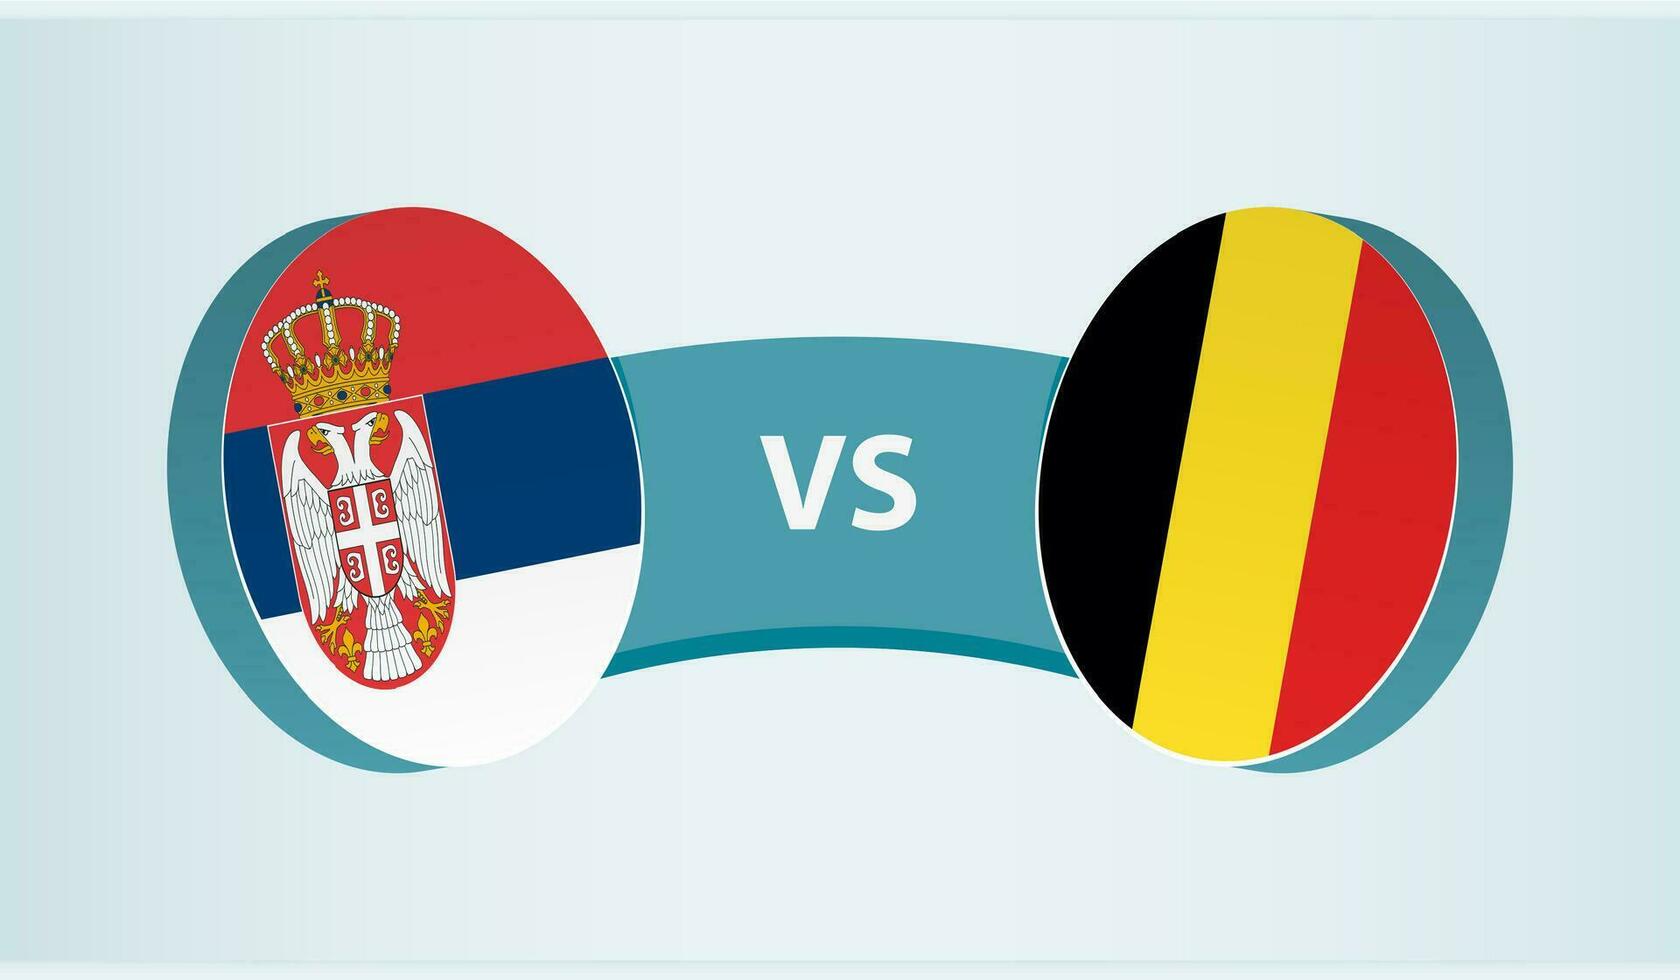 Servië versus belgië, team sport- wedstrijd concept. vector